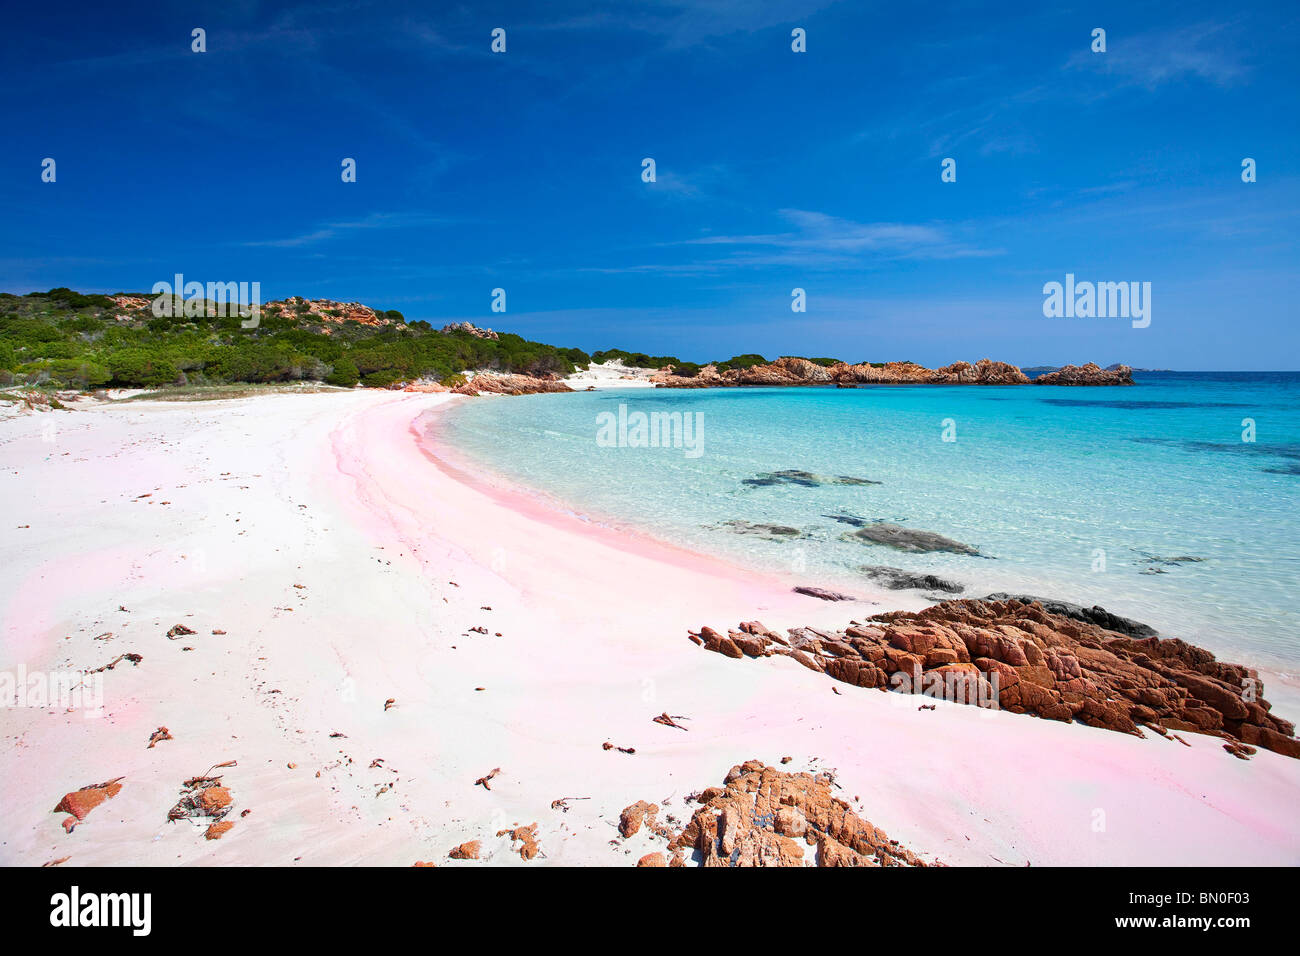 Spiaggia Rosa Cala Di Roto Isola Di Budelli Insel La Maddalena Ot Sardinien Italien Europa Stockfotografie Alamy